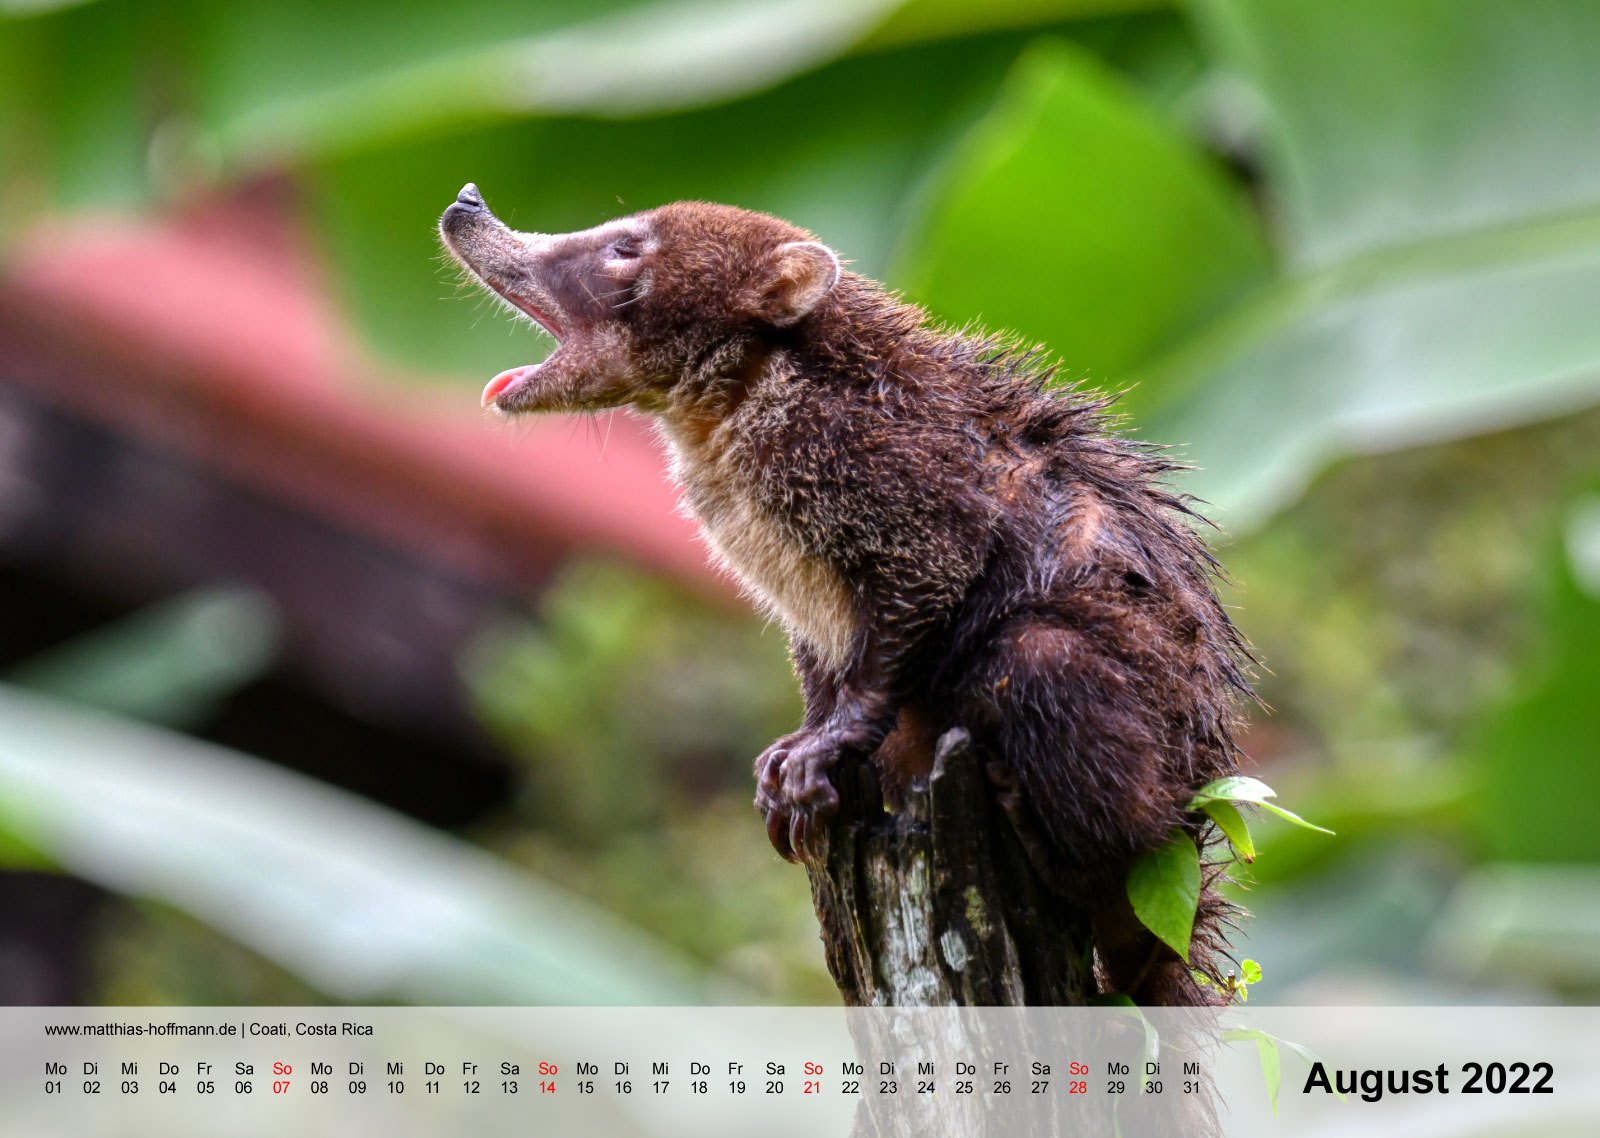 Coati, Costa Rica | Kalender 2022 - August